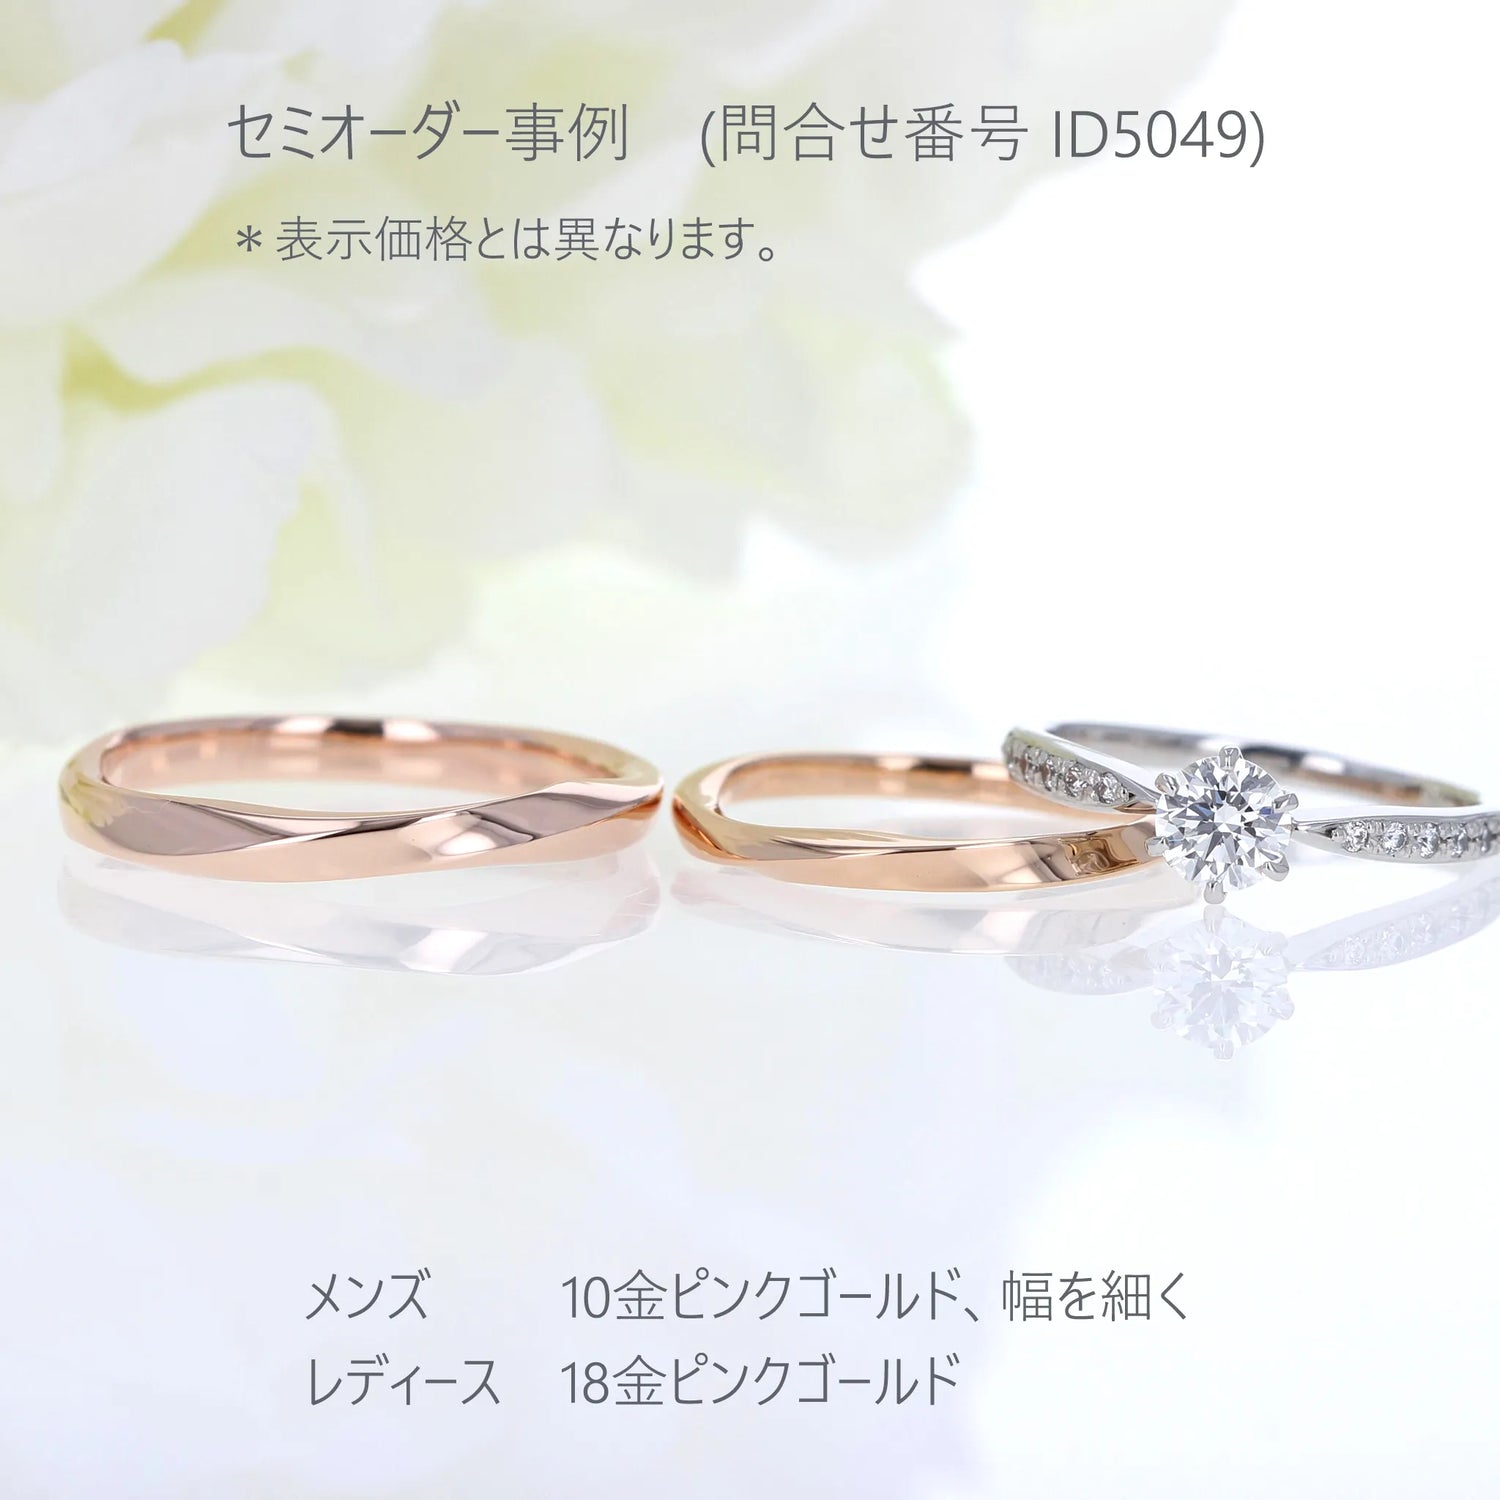  ひねりとエッジのきいたシンプルなデザインの結婚指輪 セミオーダー5049